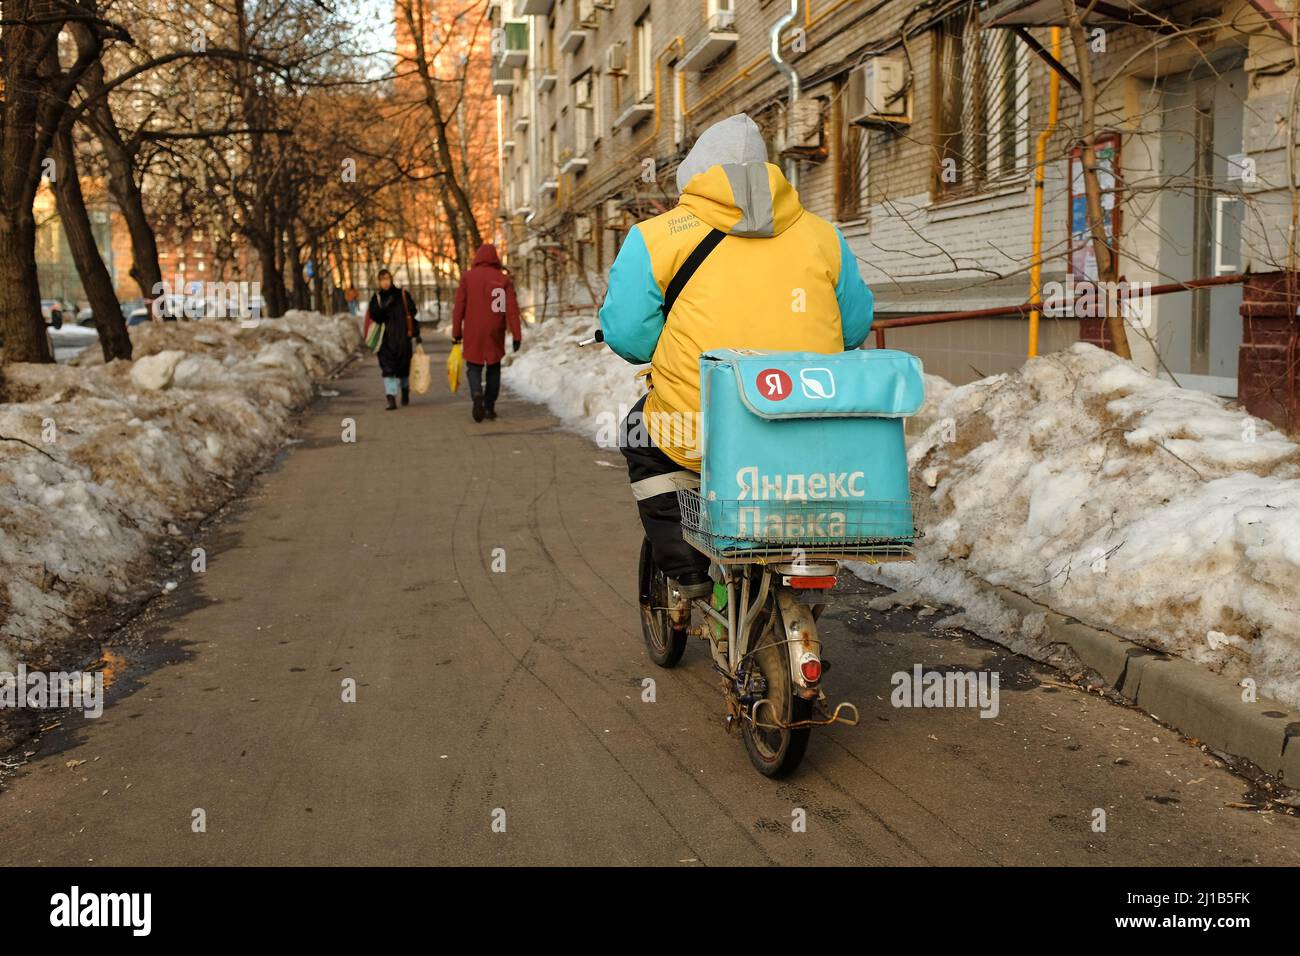 Moscou, Russie - 25 février 2022 : un messager de Yandex lavka sur un mobylette fait maison livre des provisions et des promenades sur le trottoir en hiver Banque D'Images